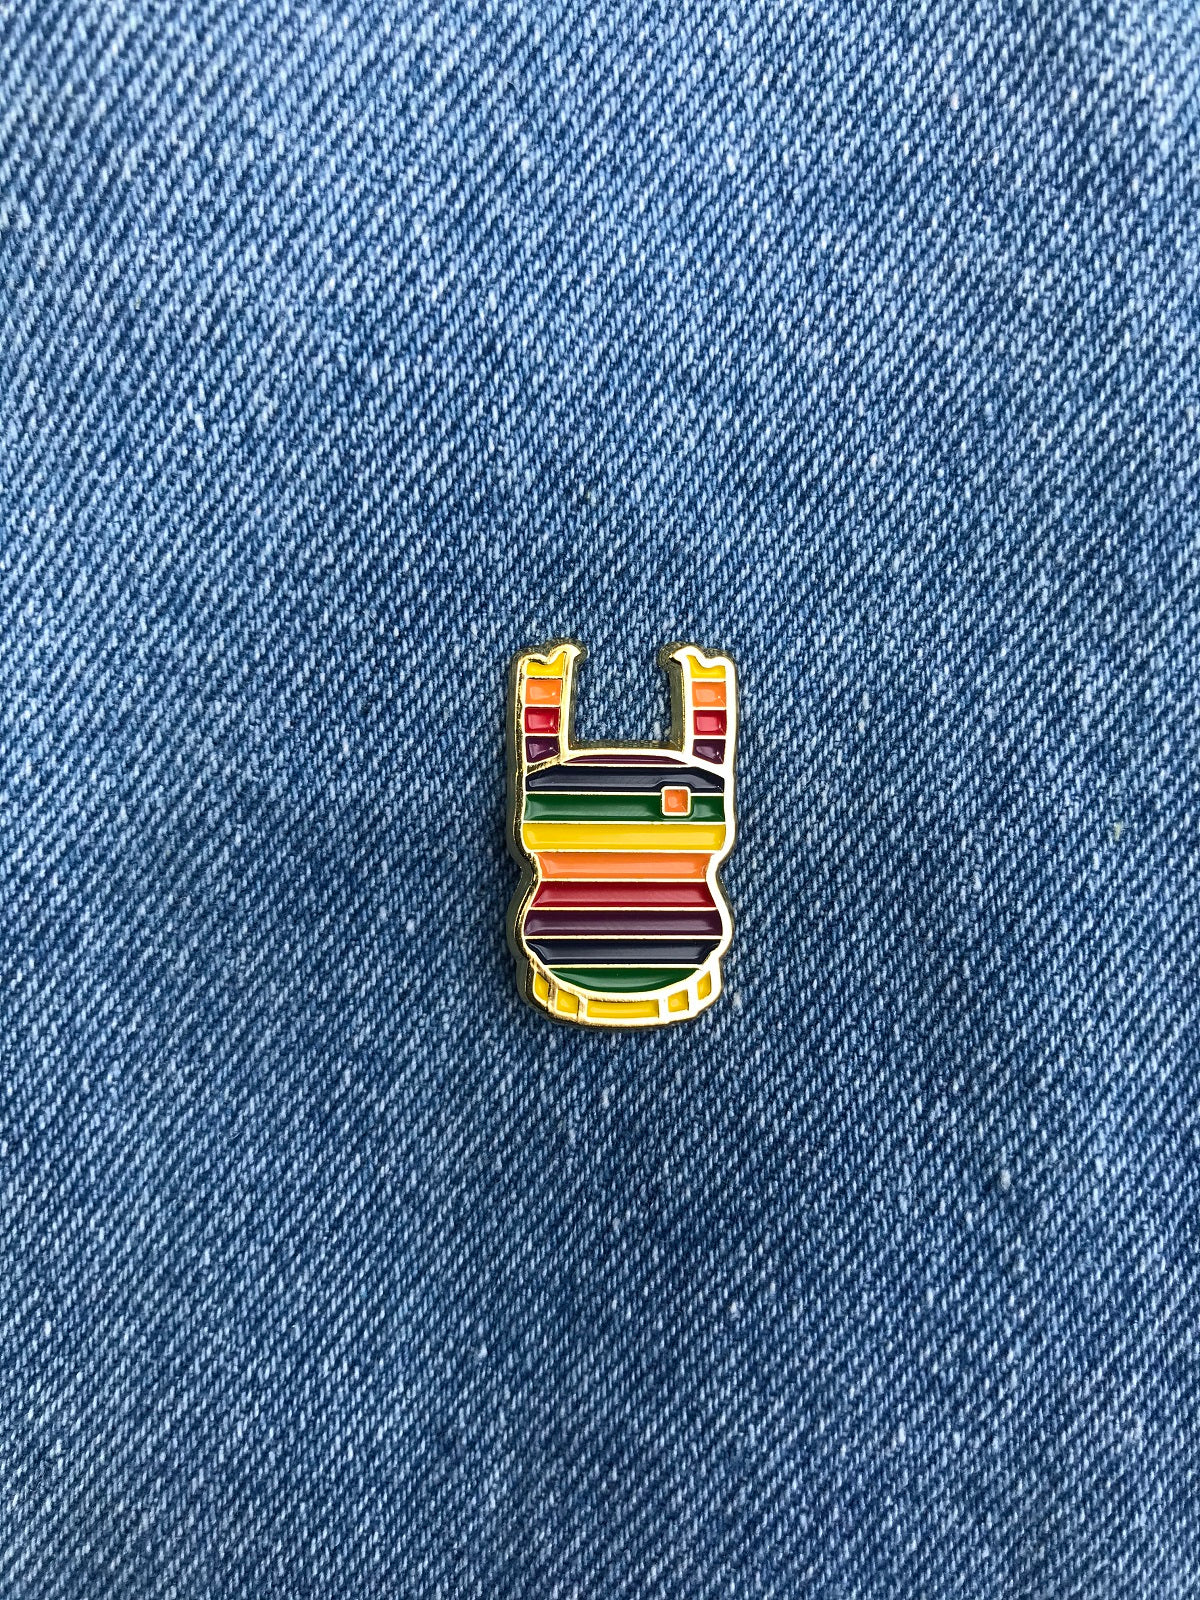 Enamel Pride and Joy Pins